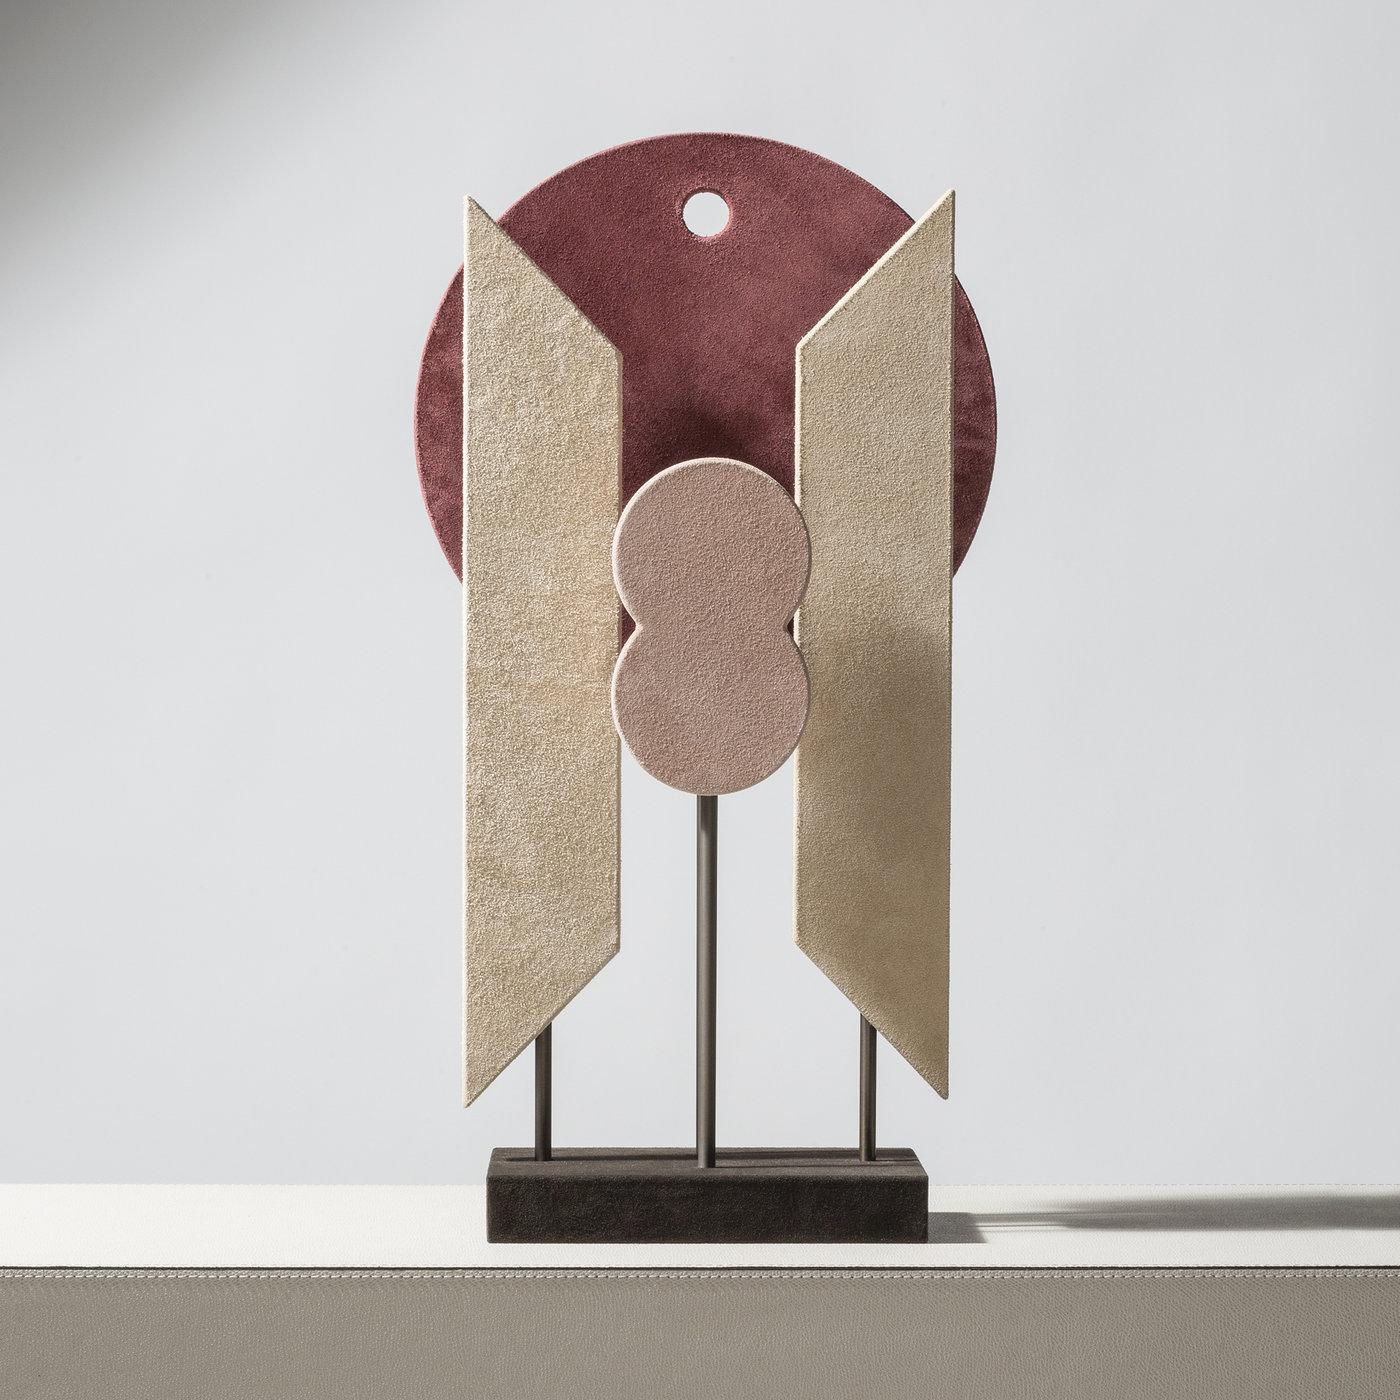 Zeitgenössische Lederskulptur - Tabou 2 von Stephane Parmentier für Giobagnara.

Diese zeitgenössischen Totems, eine Mischung aus Space-Age-Design und Stammeskunst, sind großartige Dekorationsstücke, die eine Verbindung zwischen Abstraktion und